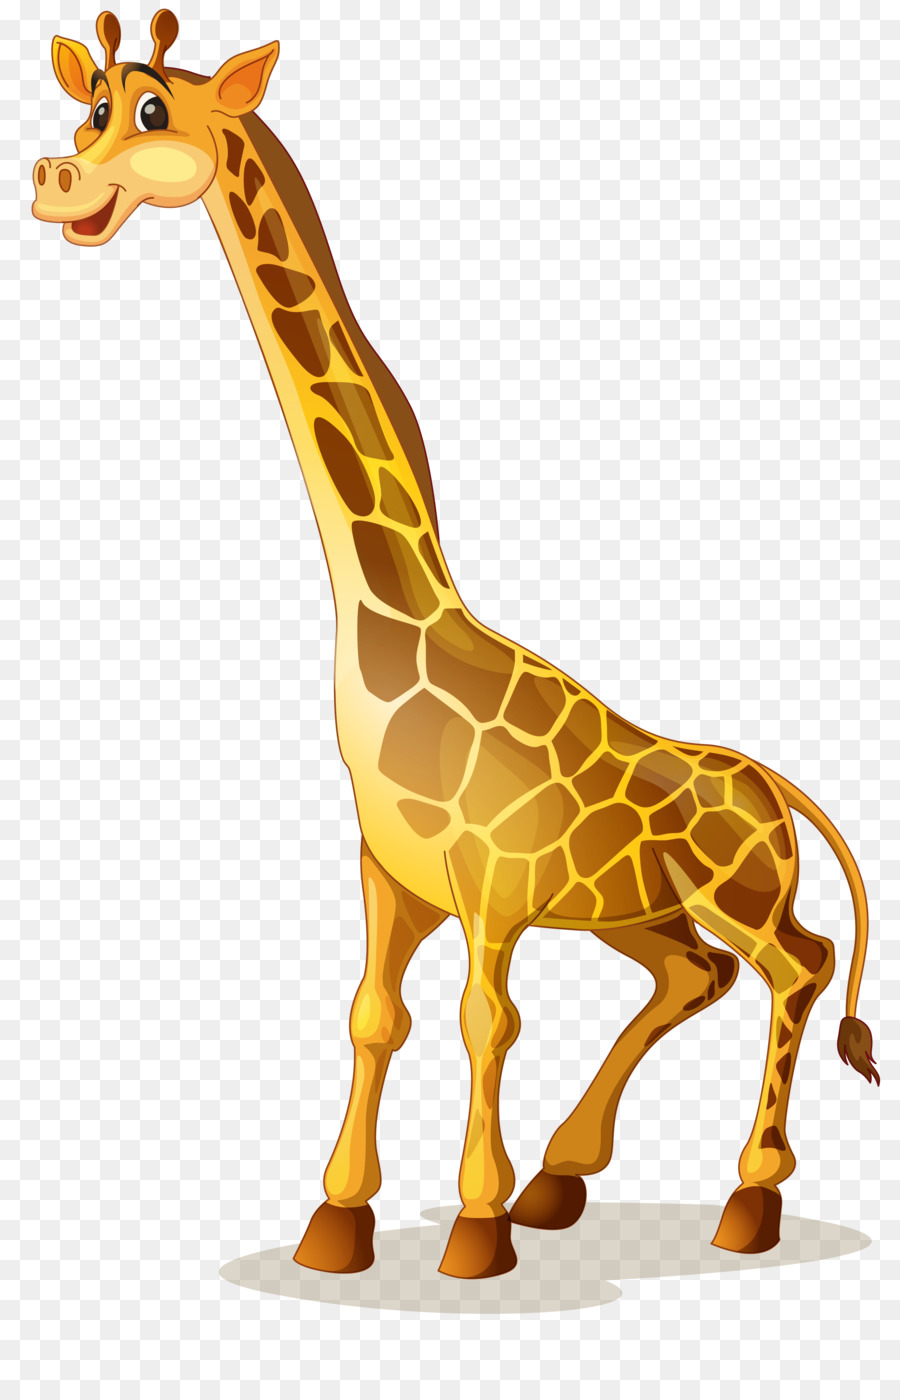 Giraffe Cartoon Illustration - giraffe png download - 3348*5160 - Free Transparent Giraffe png Download.